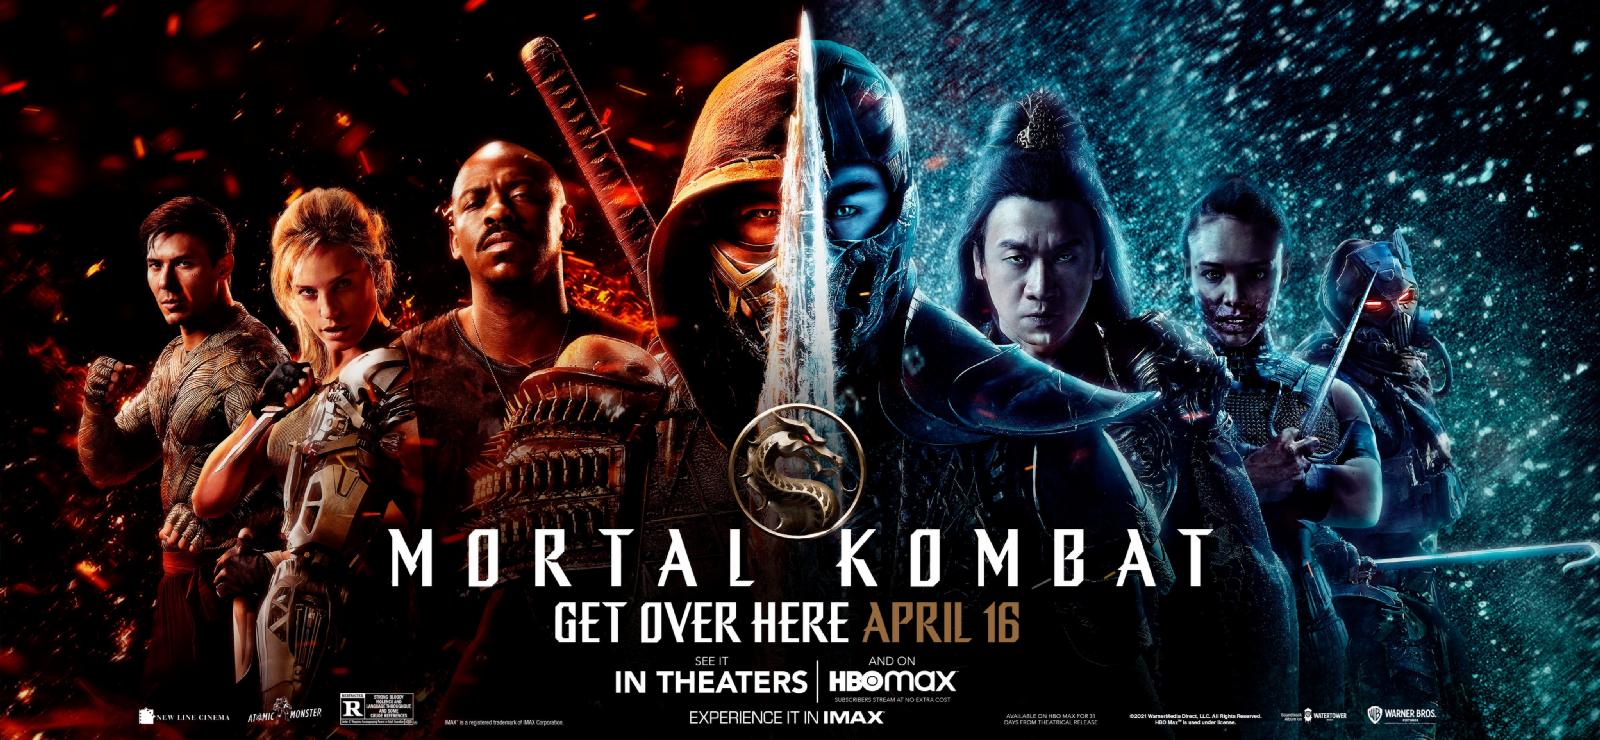 مشاهدة فلم القتال المميت Mortal Kombat (2021) كامل ومترجم HD